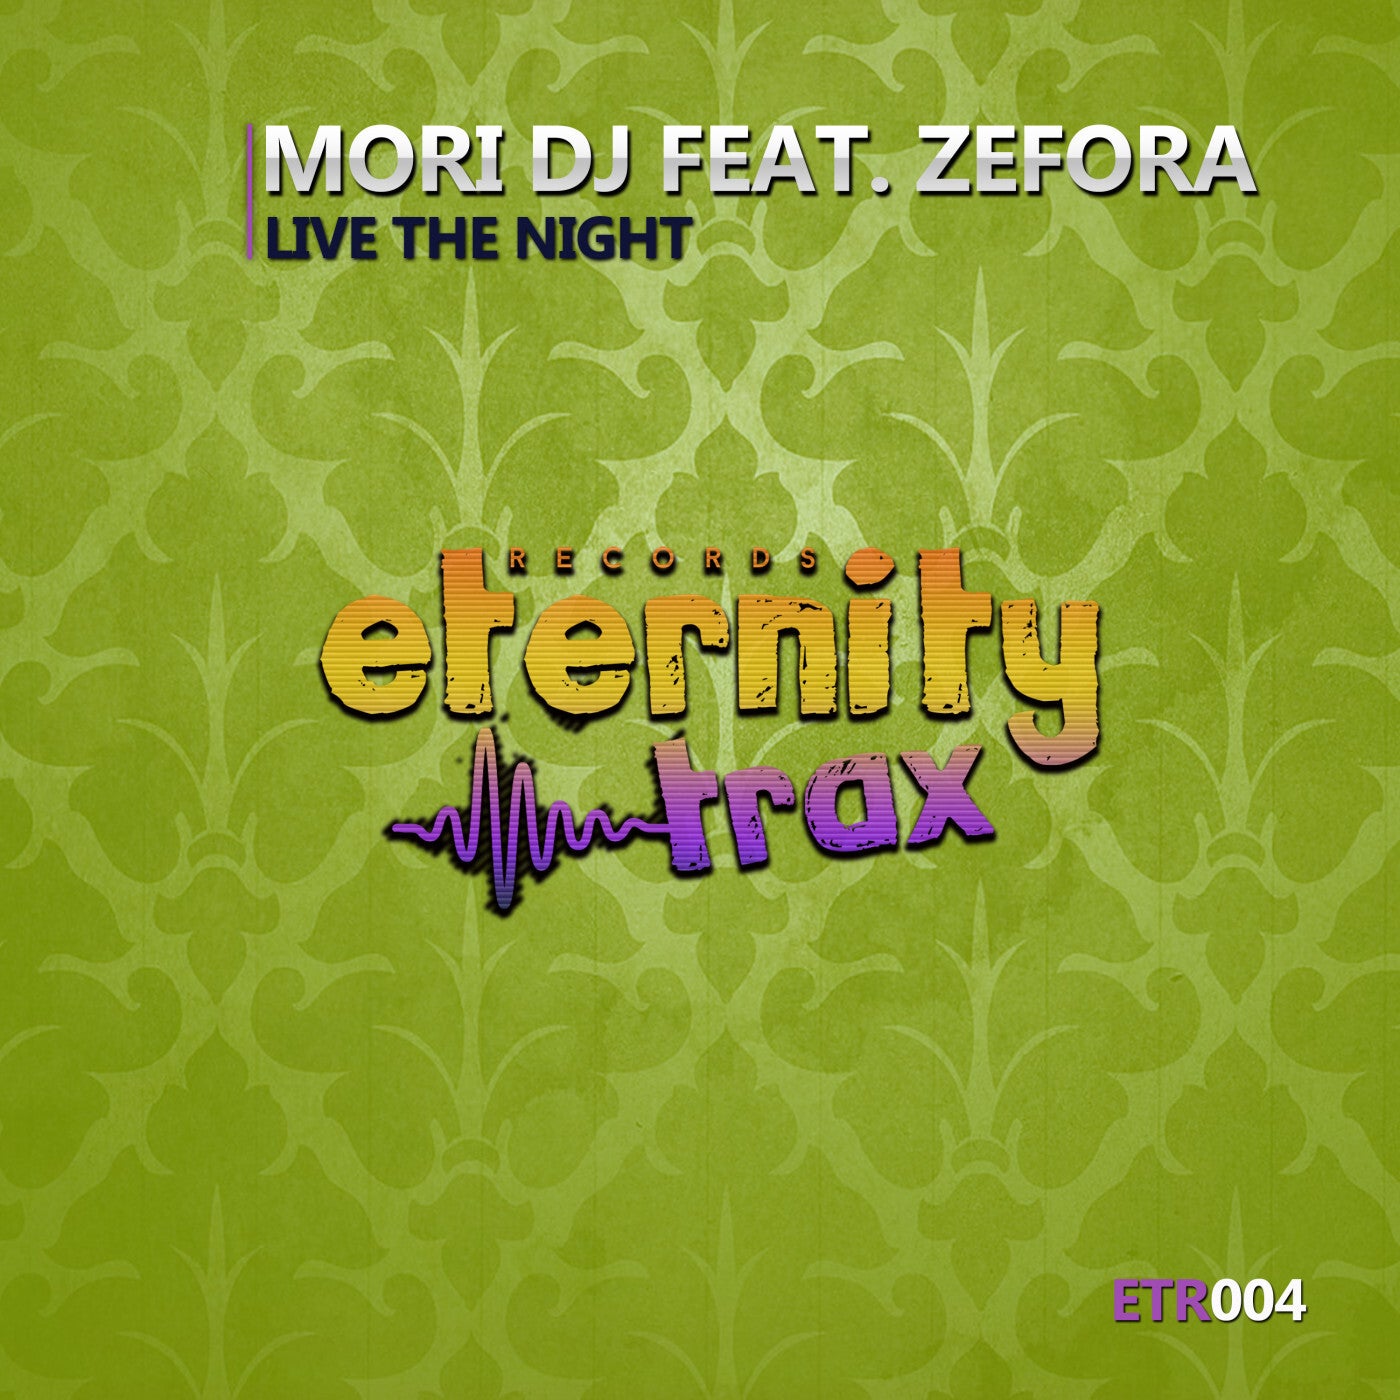 [ETR004] Mori DJ Feat. Zefora - Live The Night (Ya a la Venta / Out Now) F8f009f4-5b52-4797-9d06-bf282b6770b9